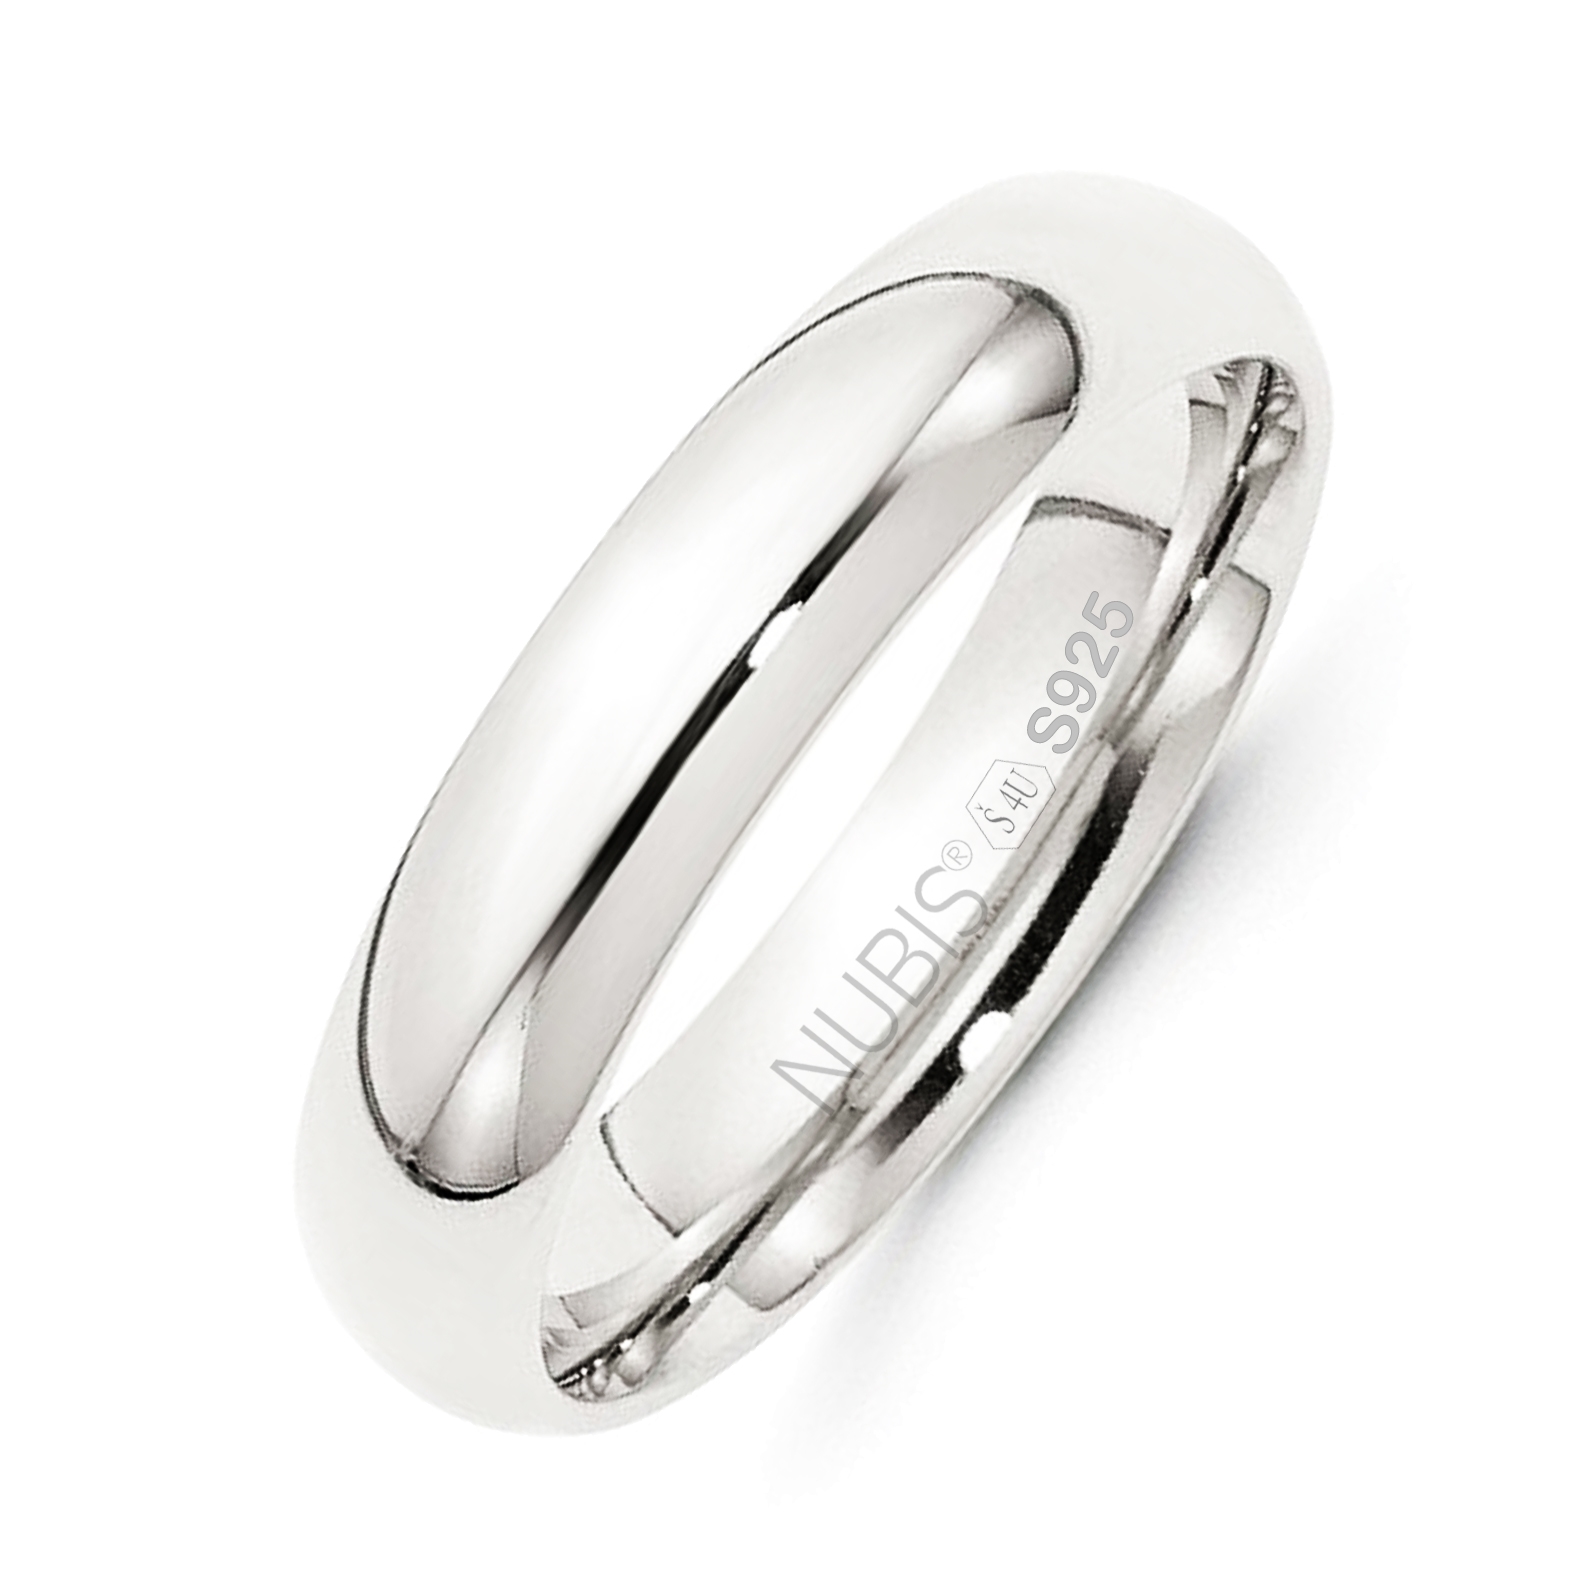 NUBIS® NB101-5 Stříbrný snubní prsten šíře 5 mm - velikost 60 - NB101-5-60